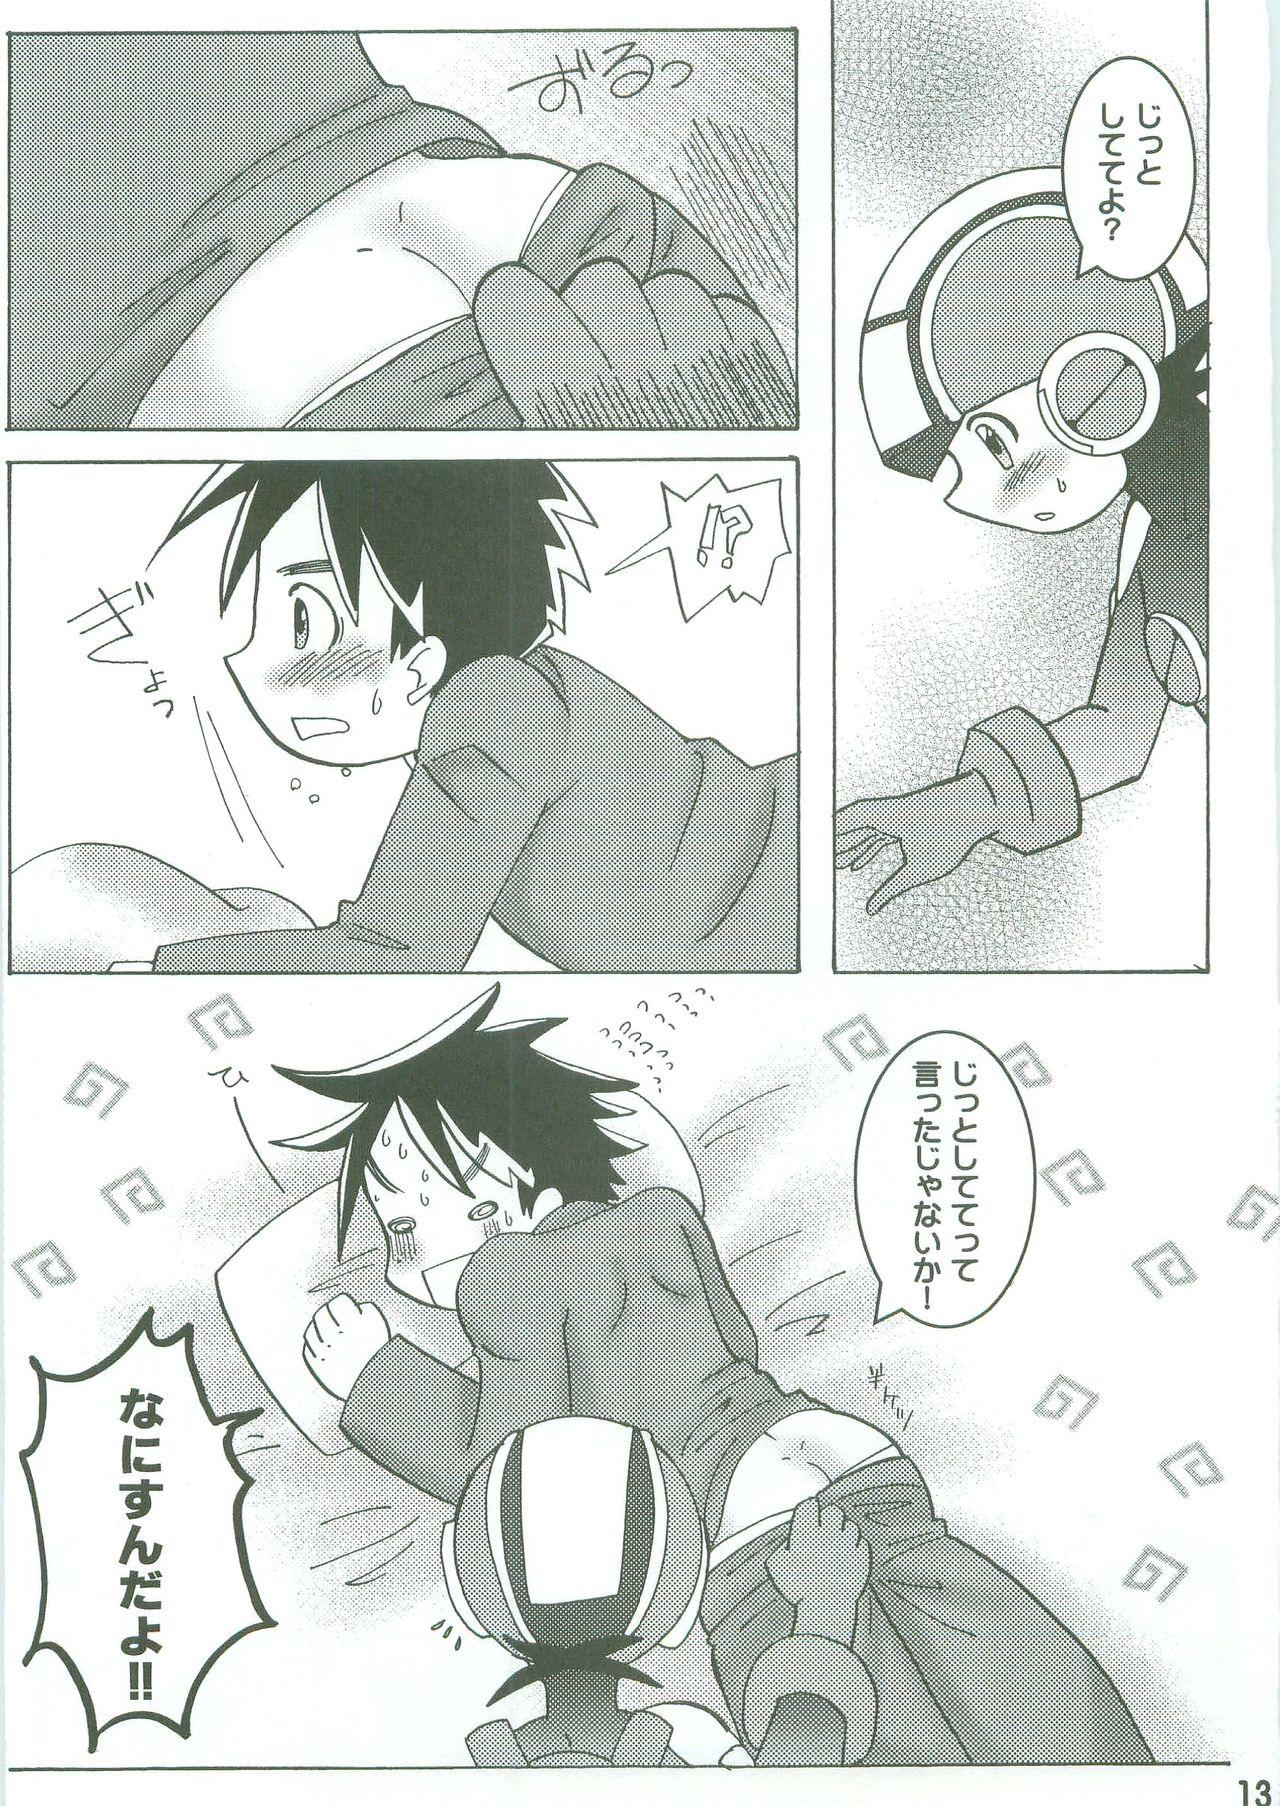 Boobs Kamonegi! (Rockman.EXE)/abemochi - Megaman battle network | rockman.exe Pretty - Page 11